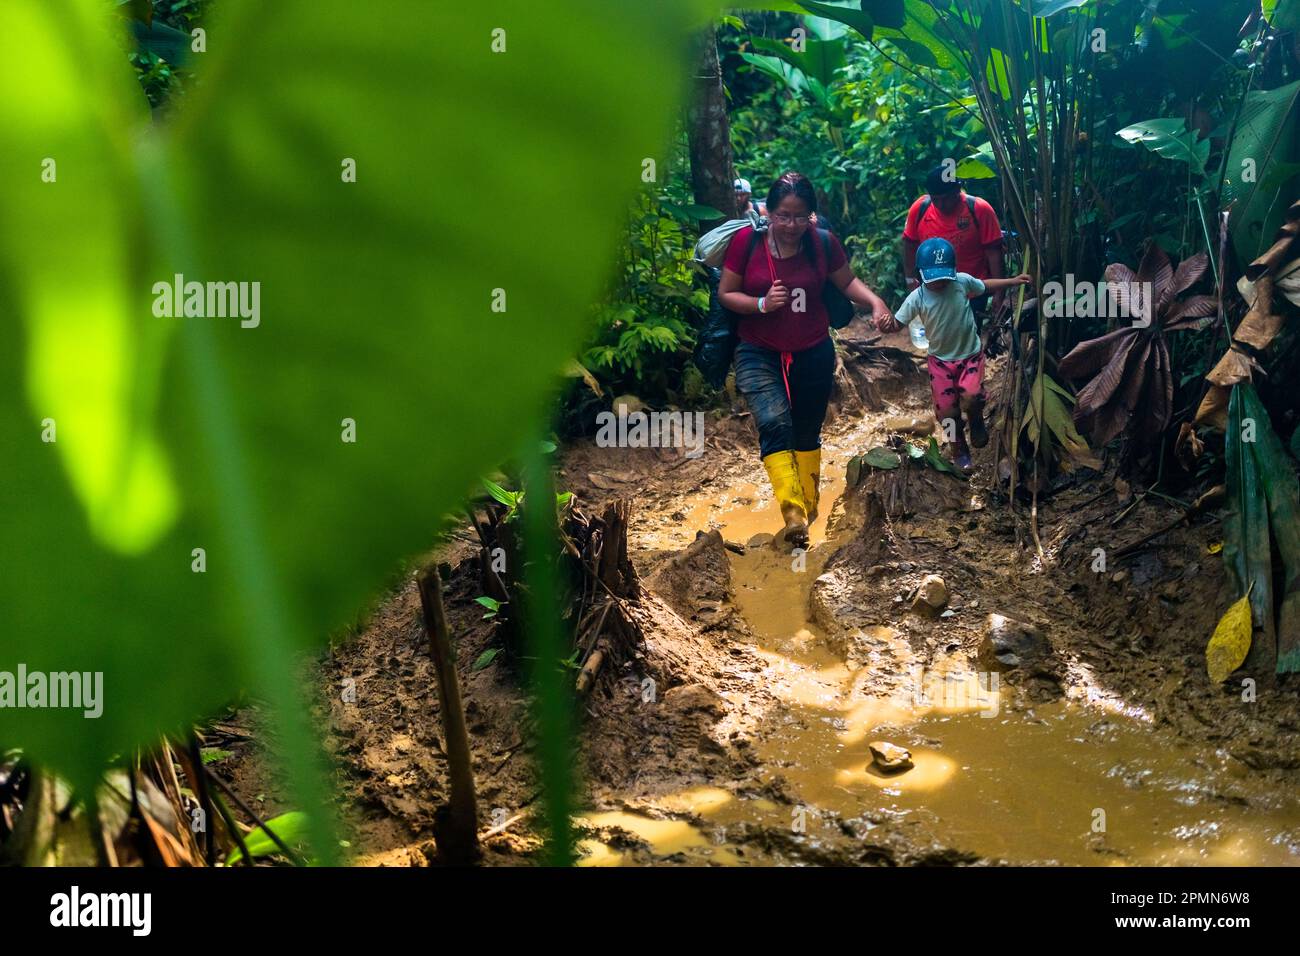 Un immigrato ecuadoriano, accompagnando sua figlia, cammina attraverso un sentiero fangoso nella giungla pericolosa del Darién Gap tra Colombia e Panamá. Foto Stock